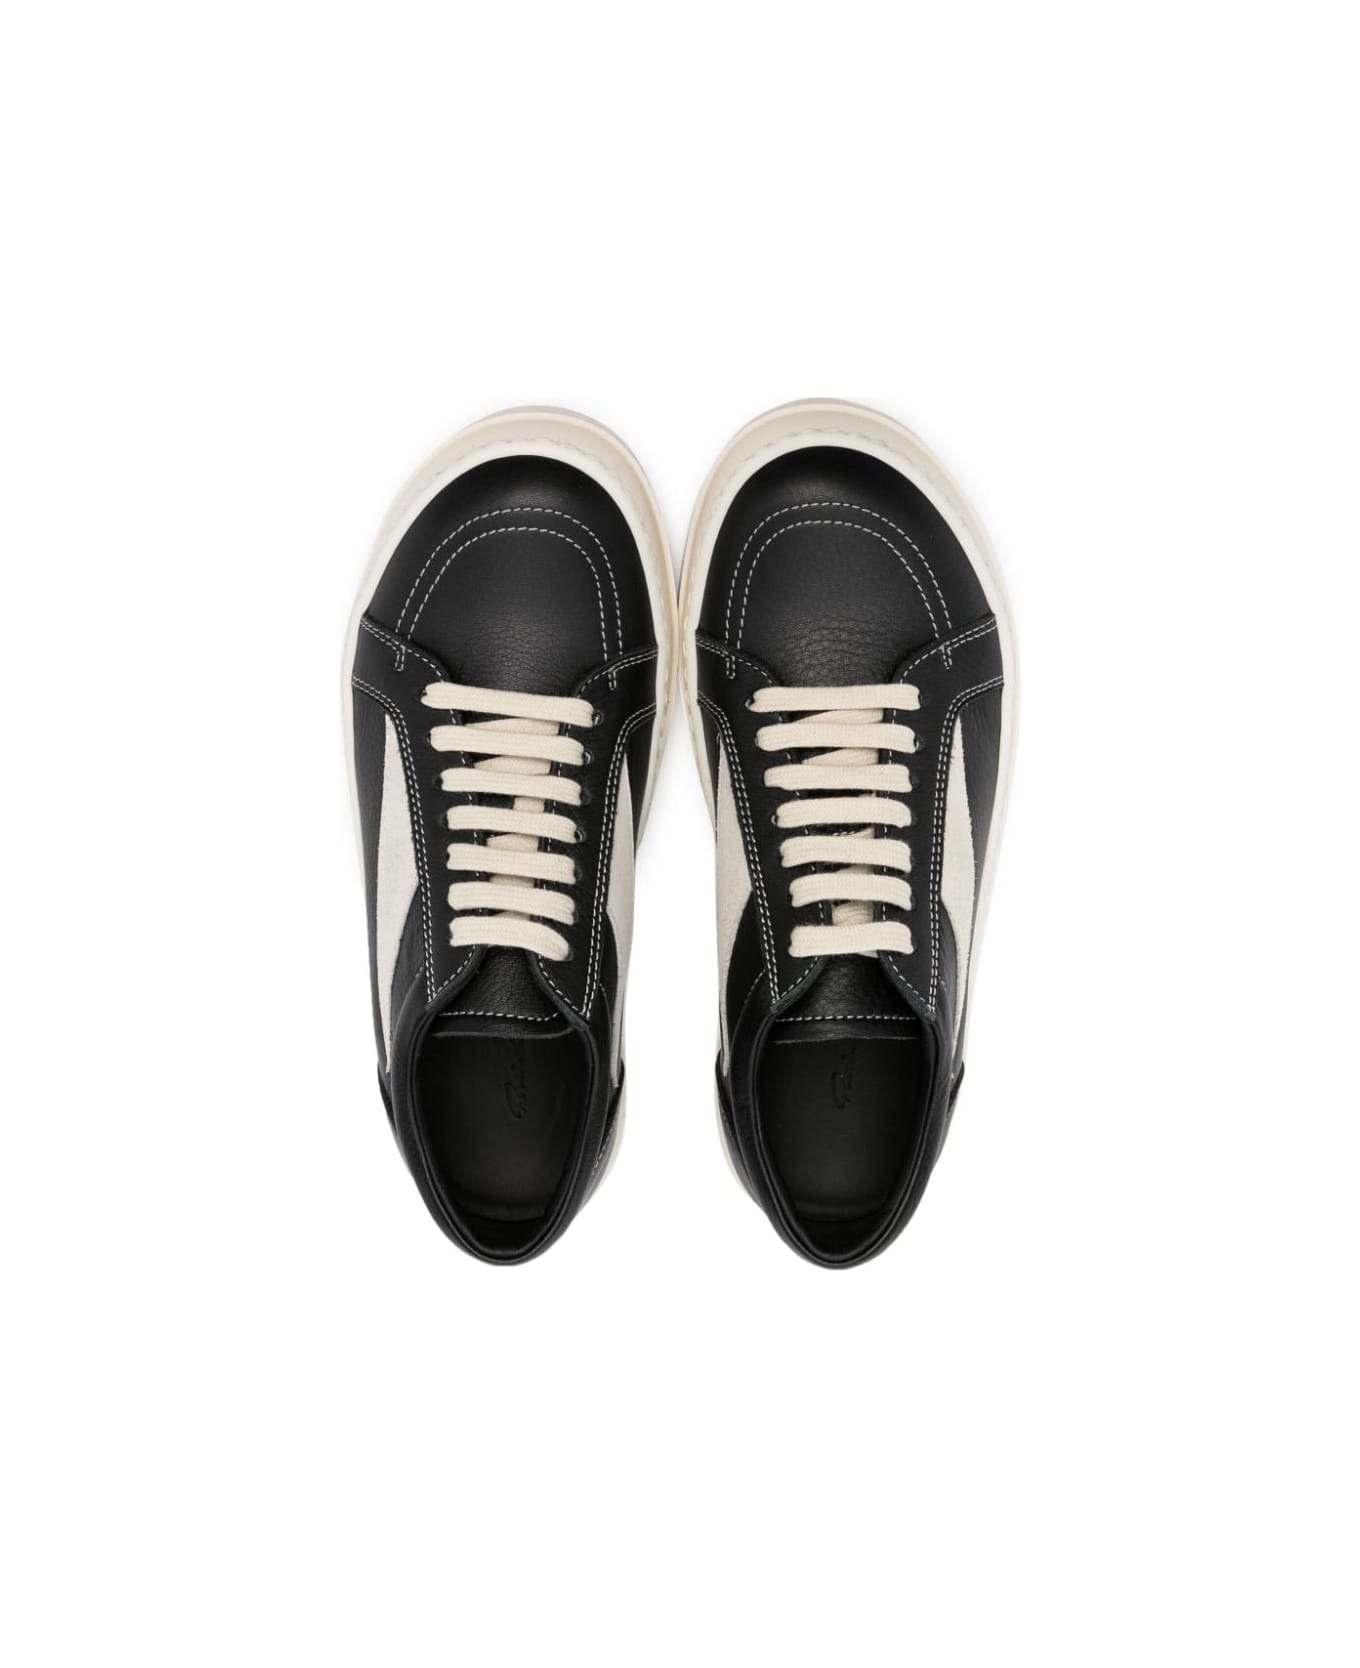 Rick Owens Leather Vintage Sneakers - Nike Air Zoom Freak Men Shoes